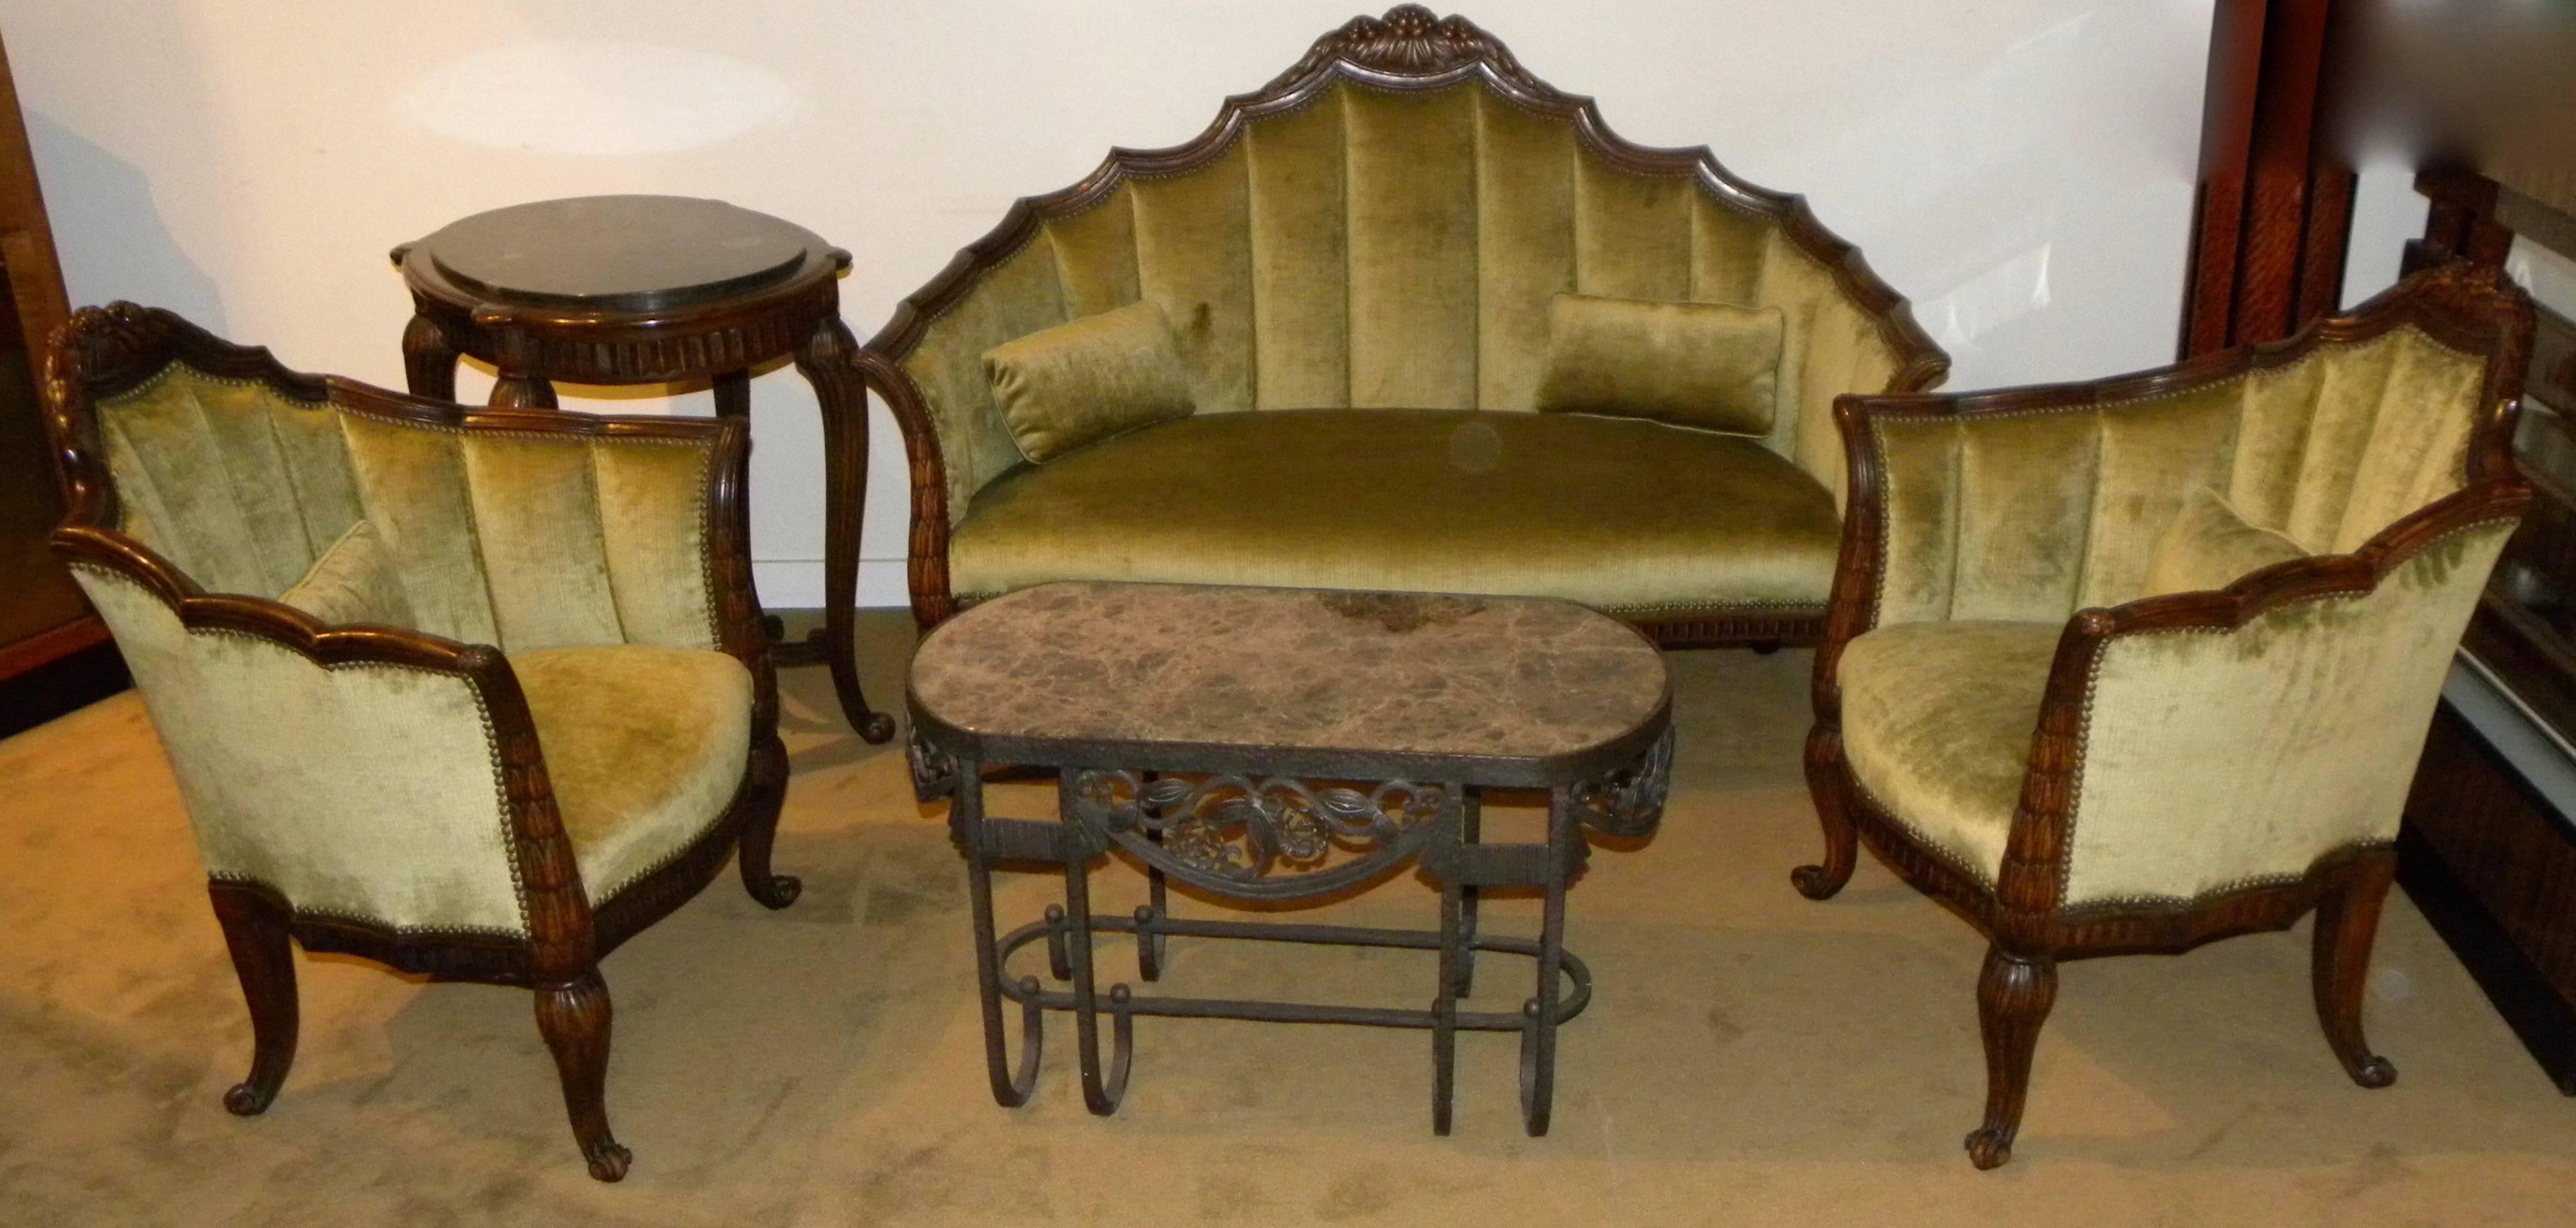 Originales französisches Art-Déco-Sofa mit Stühlen und passendem Tisch. Dieses spektakuläre Set mit komplizierten Schnitzereien im gesamten Rahmen repräsentiert die 